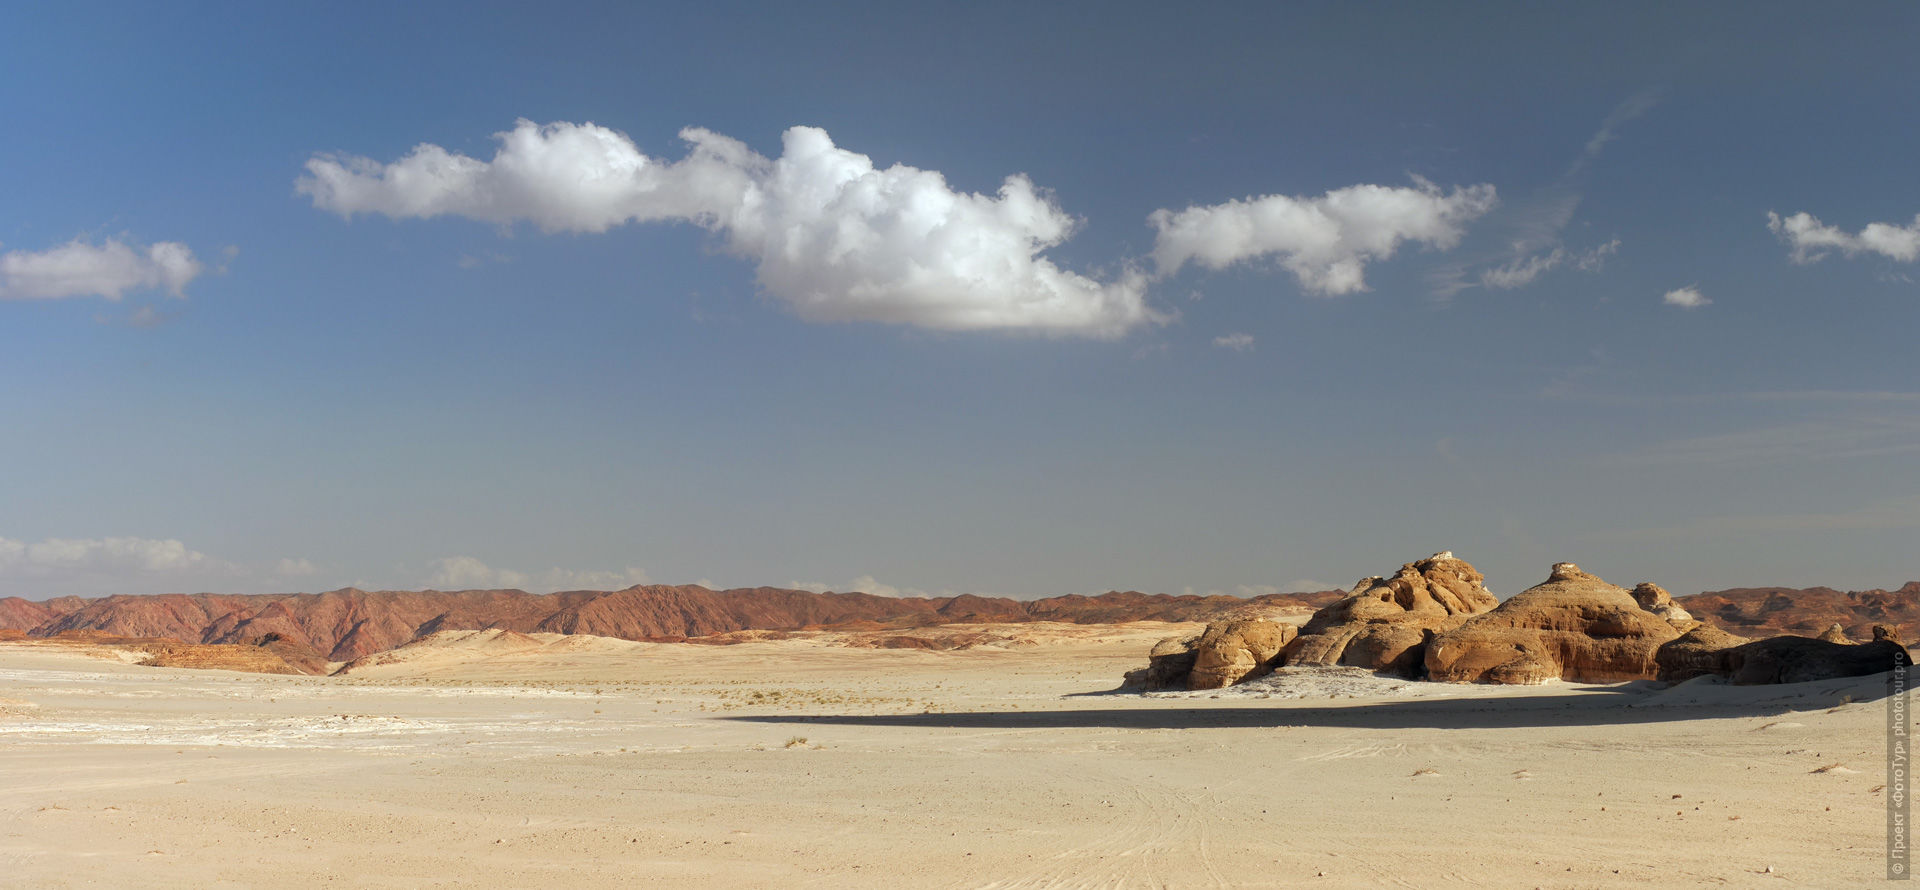 Пустня Синая, приключенческий фототур/тур пустыни и горы Синая, Египет, 27 ноября - 8 декабря 2021 года.